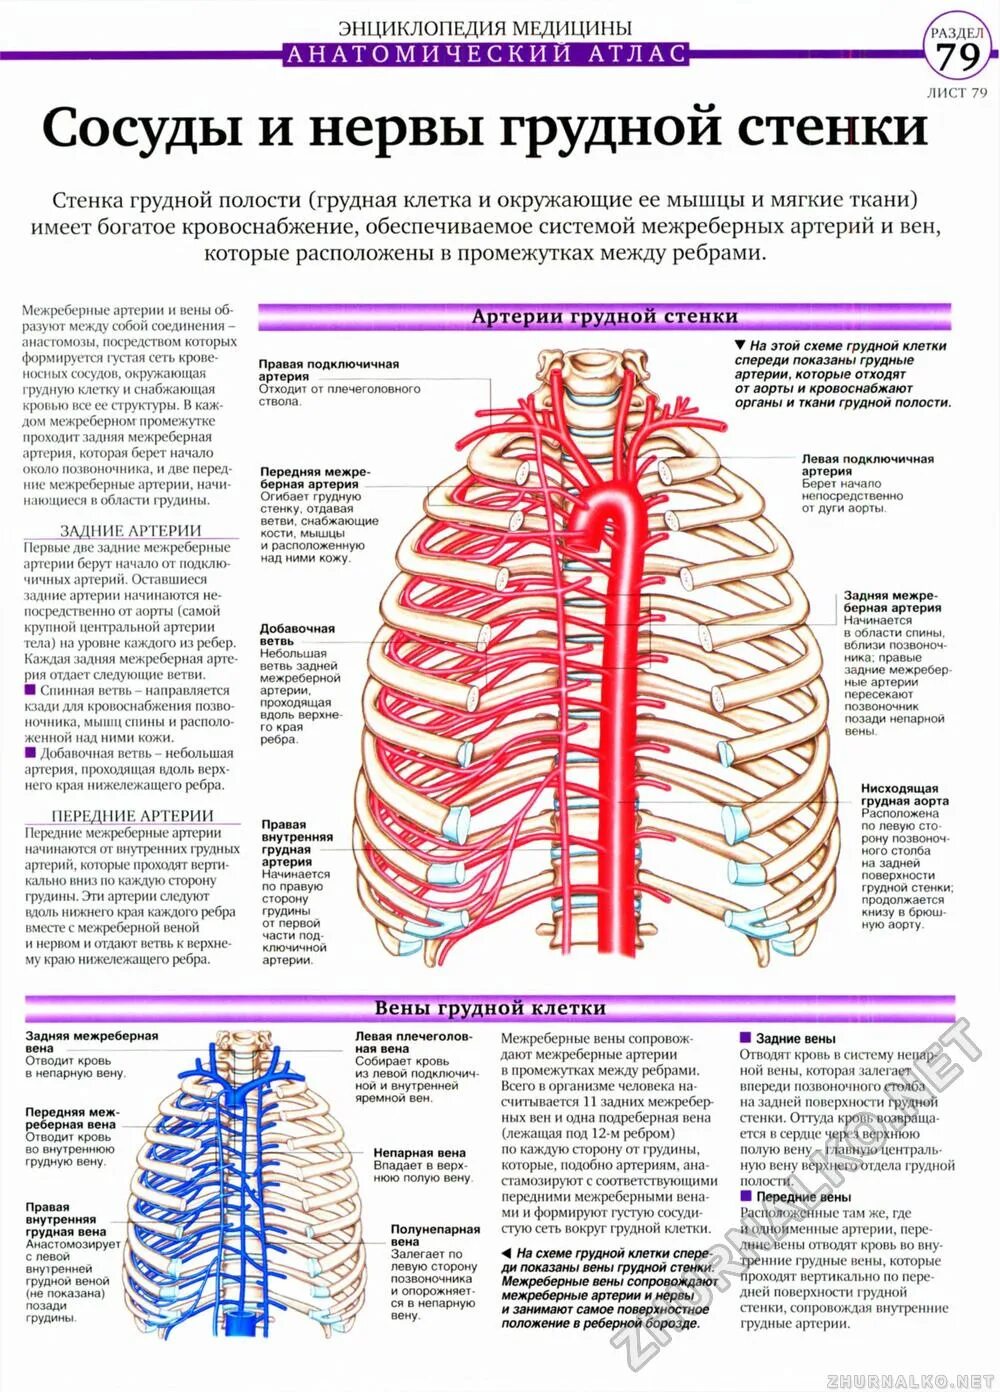 Нервы грудной клетки человека спереди. Артерии грудной клетки анатомия. Кровоснабжение грудной полости схема. Кровоснабжение и иннервация грудной клетки.